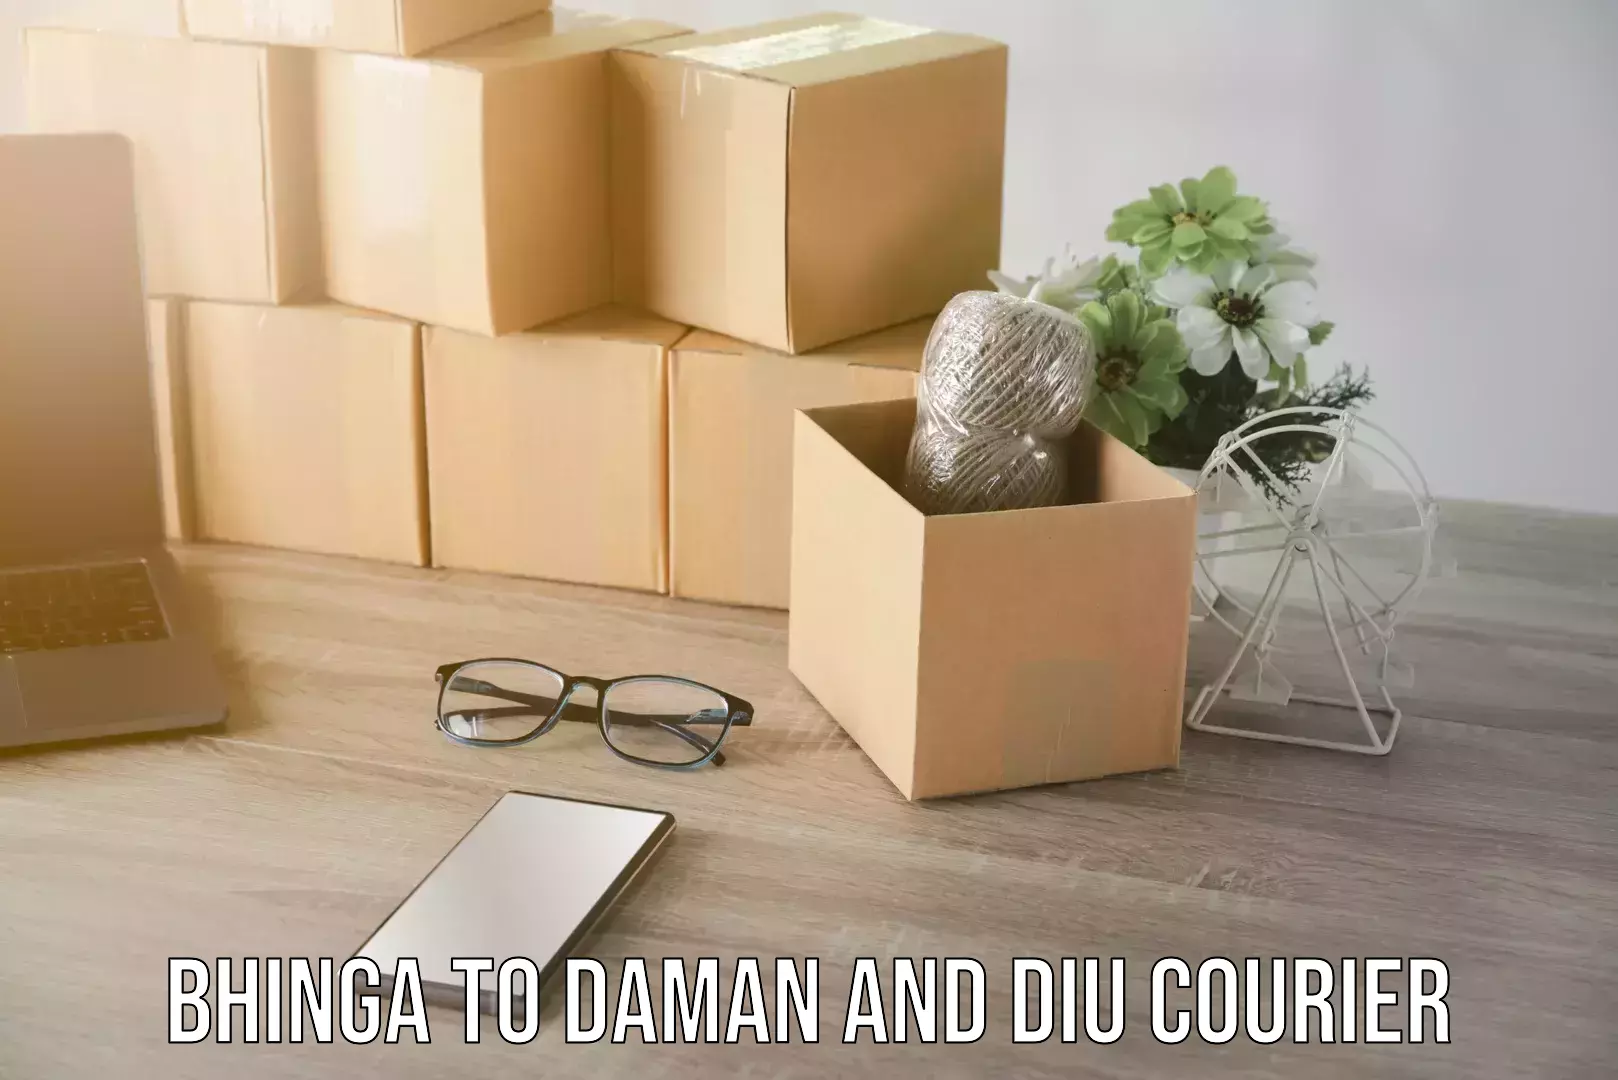 Efficient parcel service Bhinga to Daman and Diu